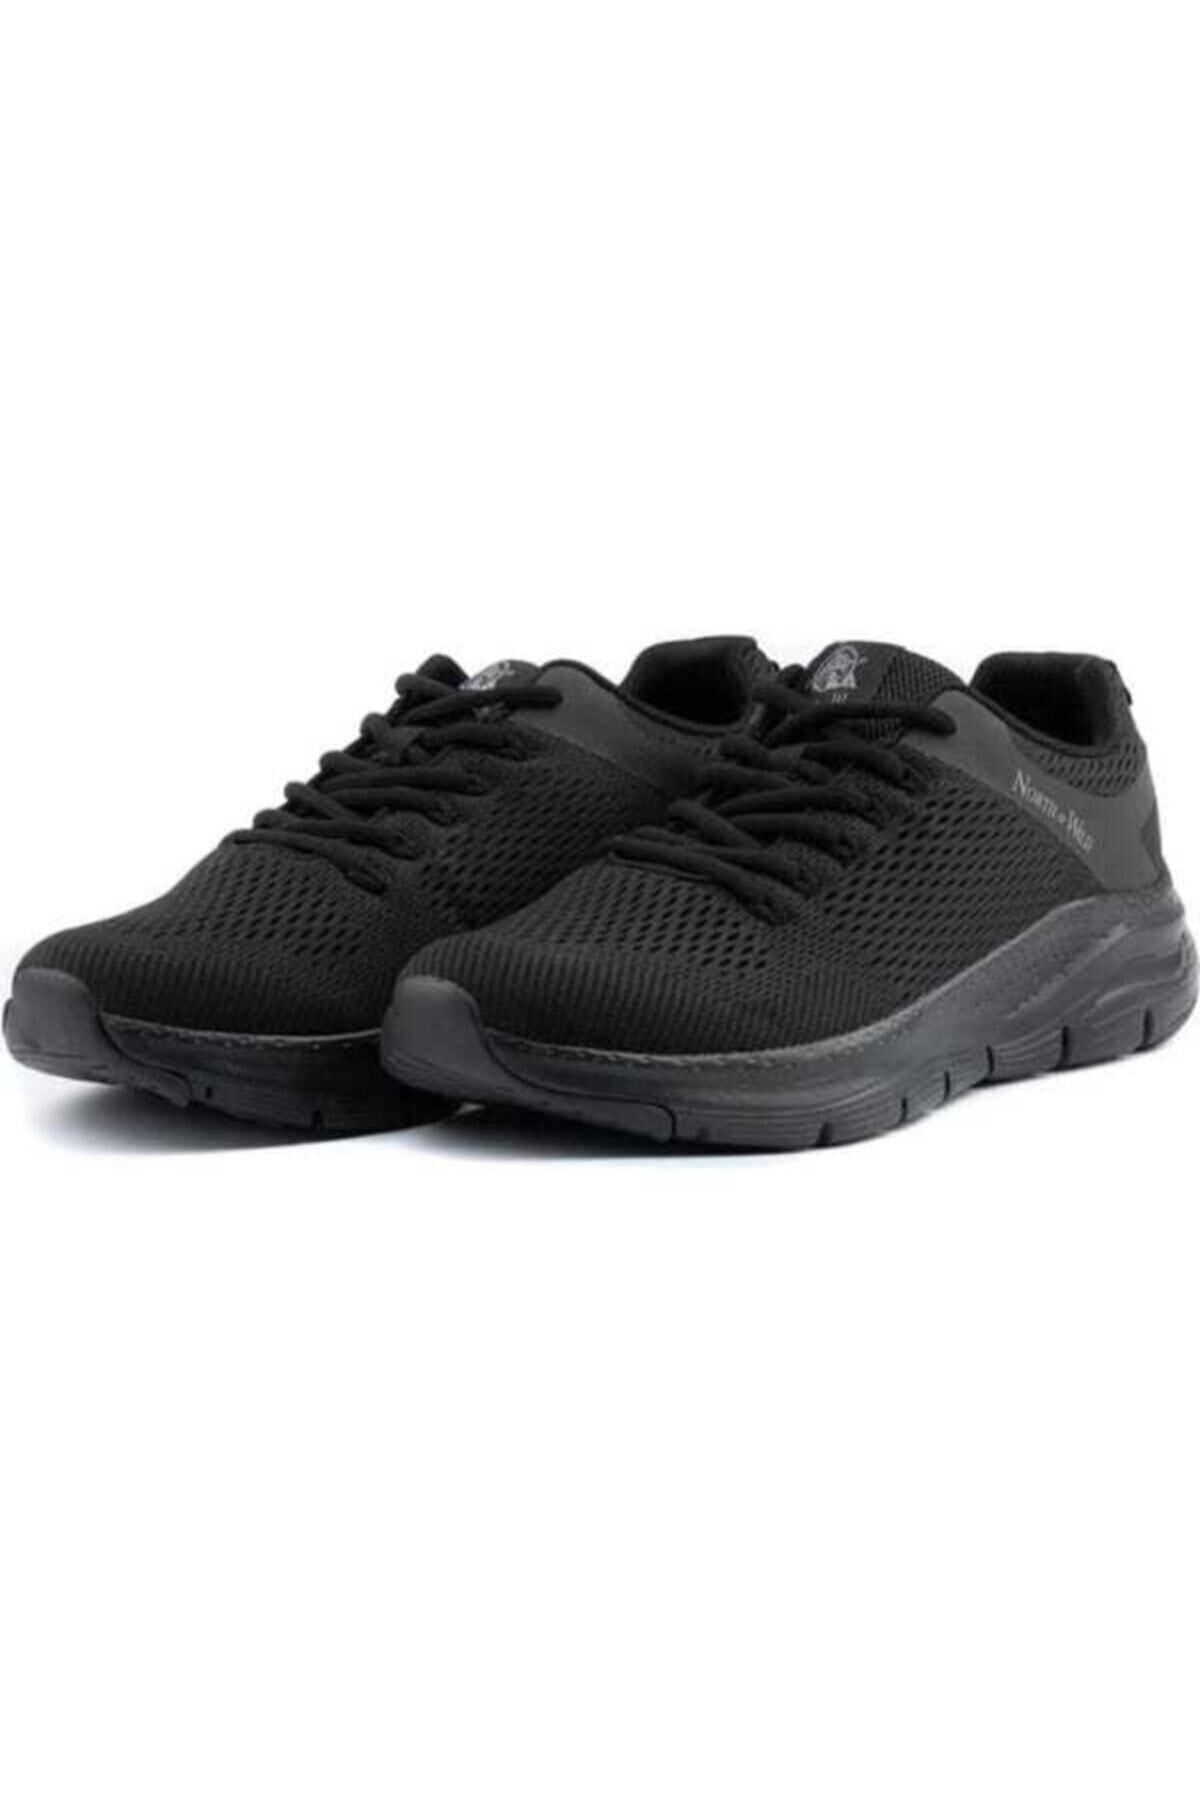 NORT OF WILD Unreval Erkek Siyah Sneaker Yürüyüş Hafızalı Taban Spor Ayakkabı